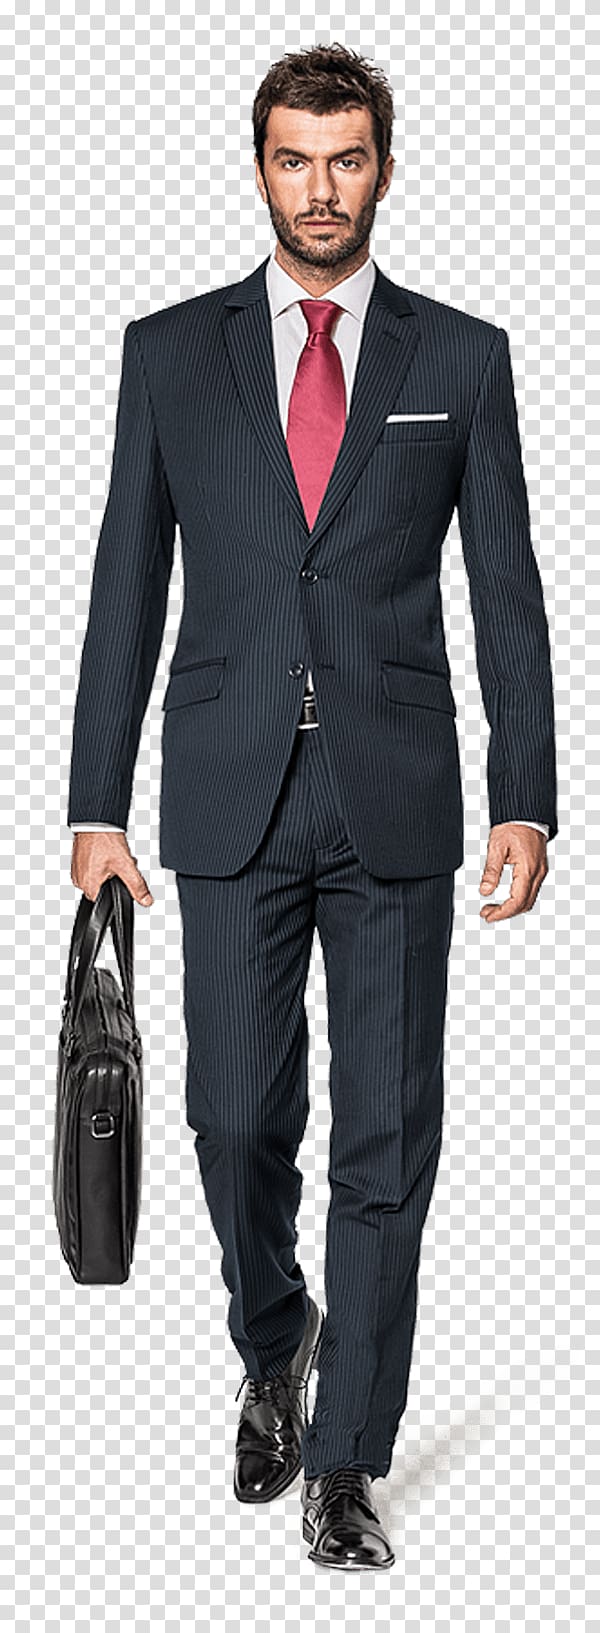 Suit Clothing Fashion, men transparent background PNG clipart